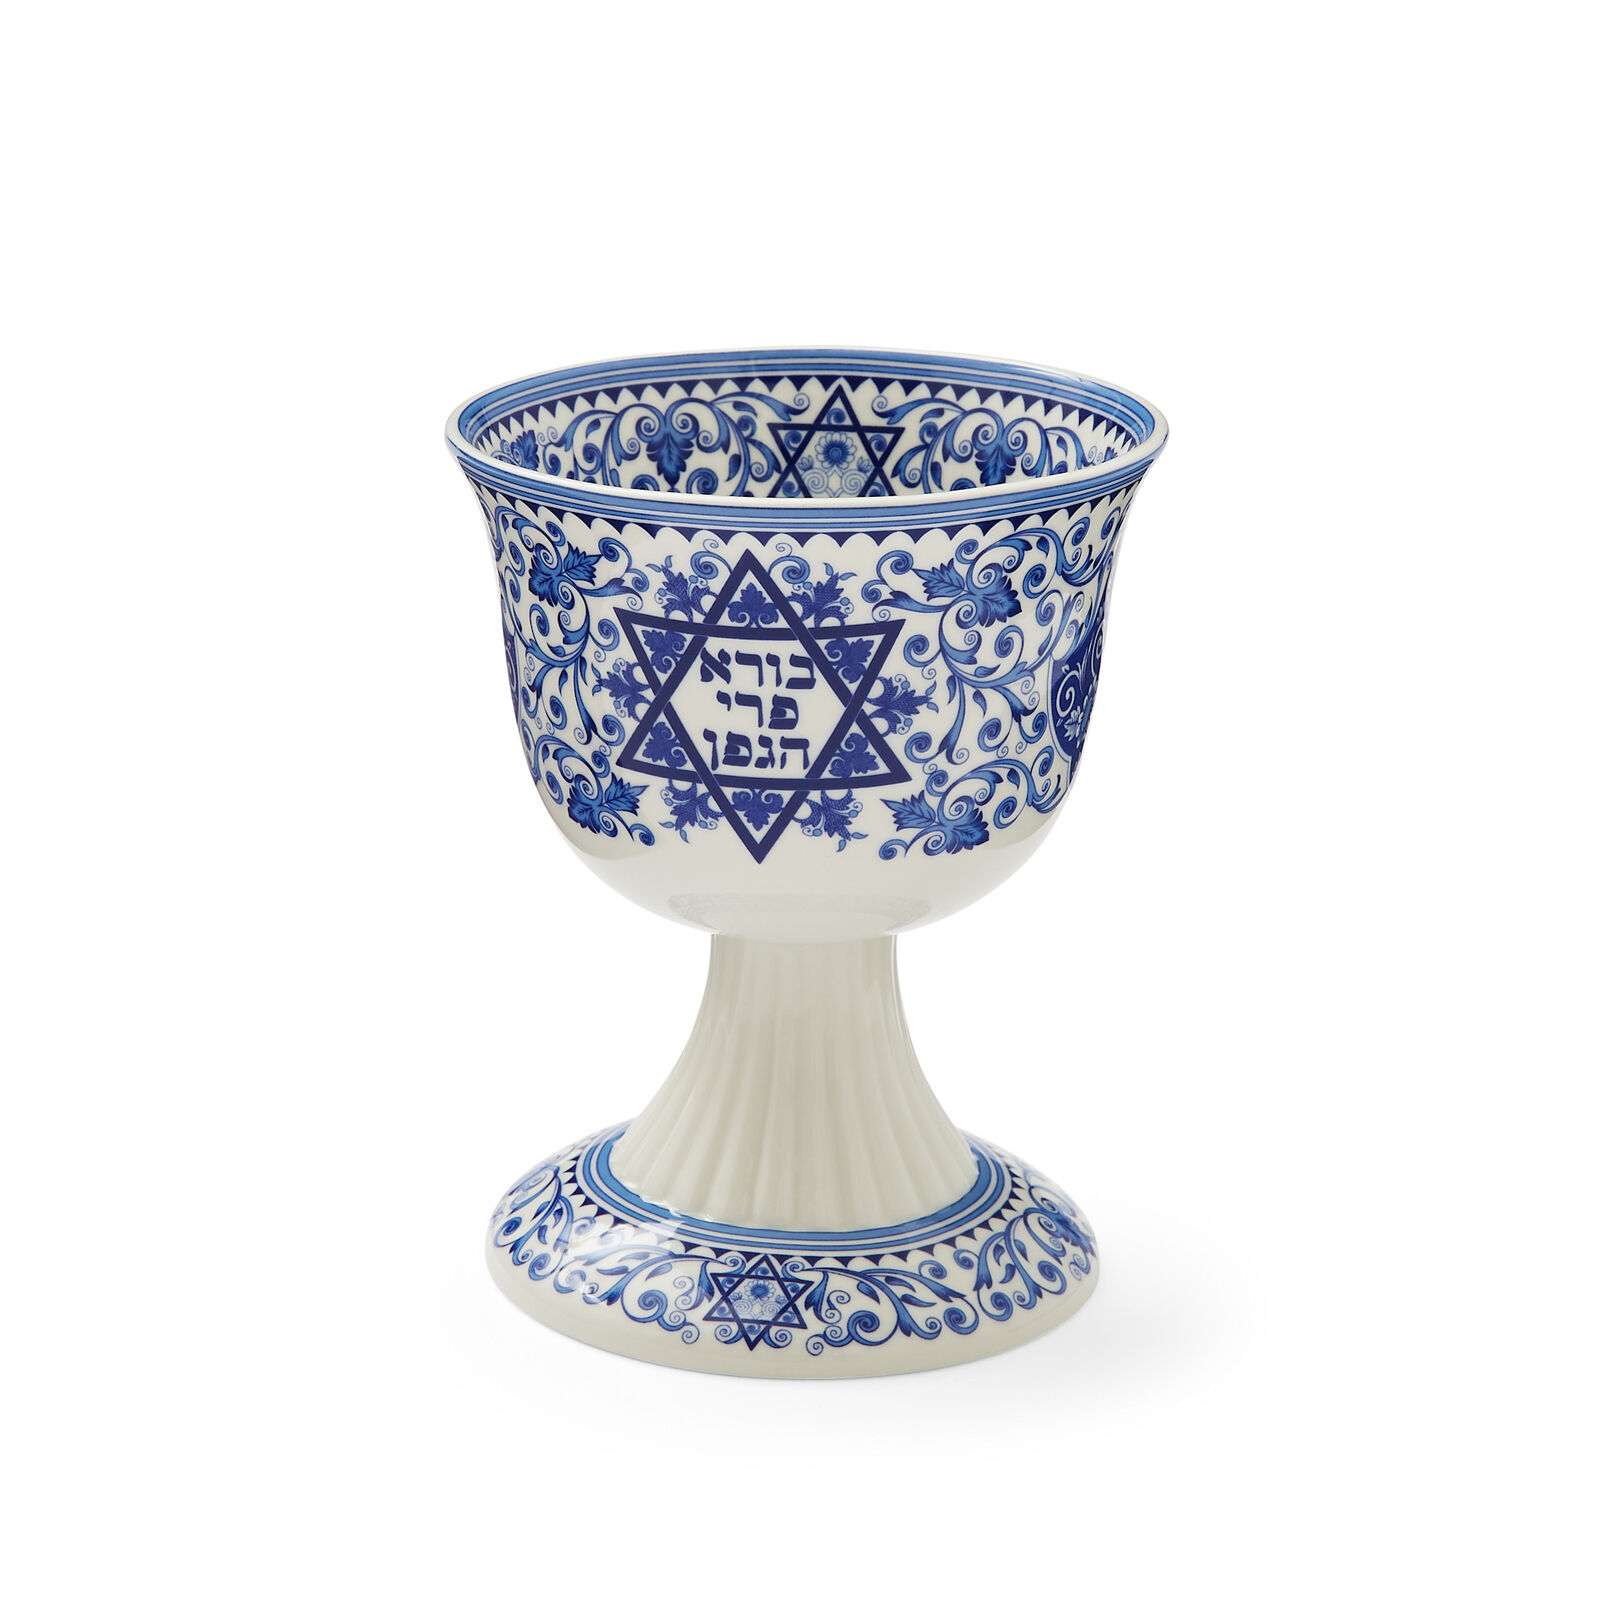 Spode Judaica Kiddush Cup 6 Oz, Made of Fine Porcelain